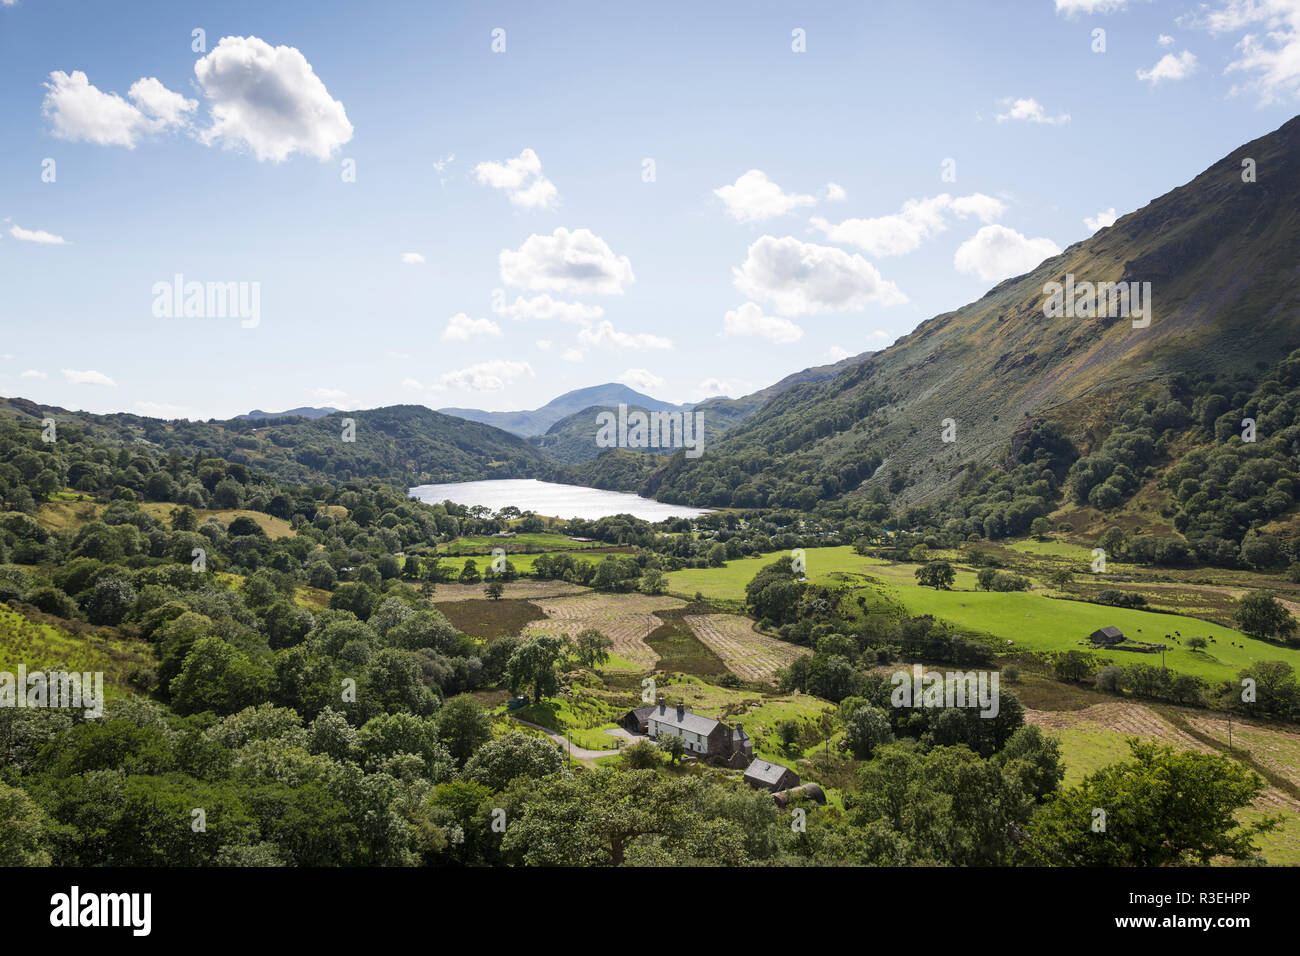 Landscape view of Lyn Gwynant, Nant Gwynant valley, Gwynedd, Snowdonia National Park, Wales, UK Stock Photo